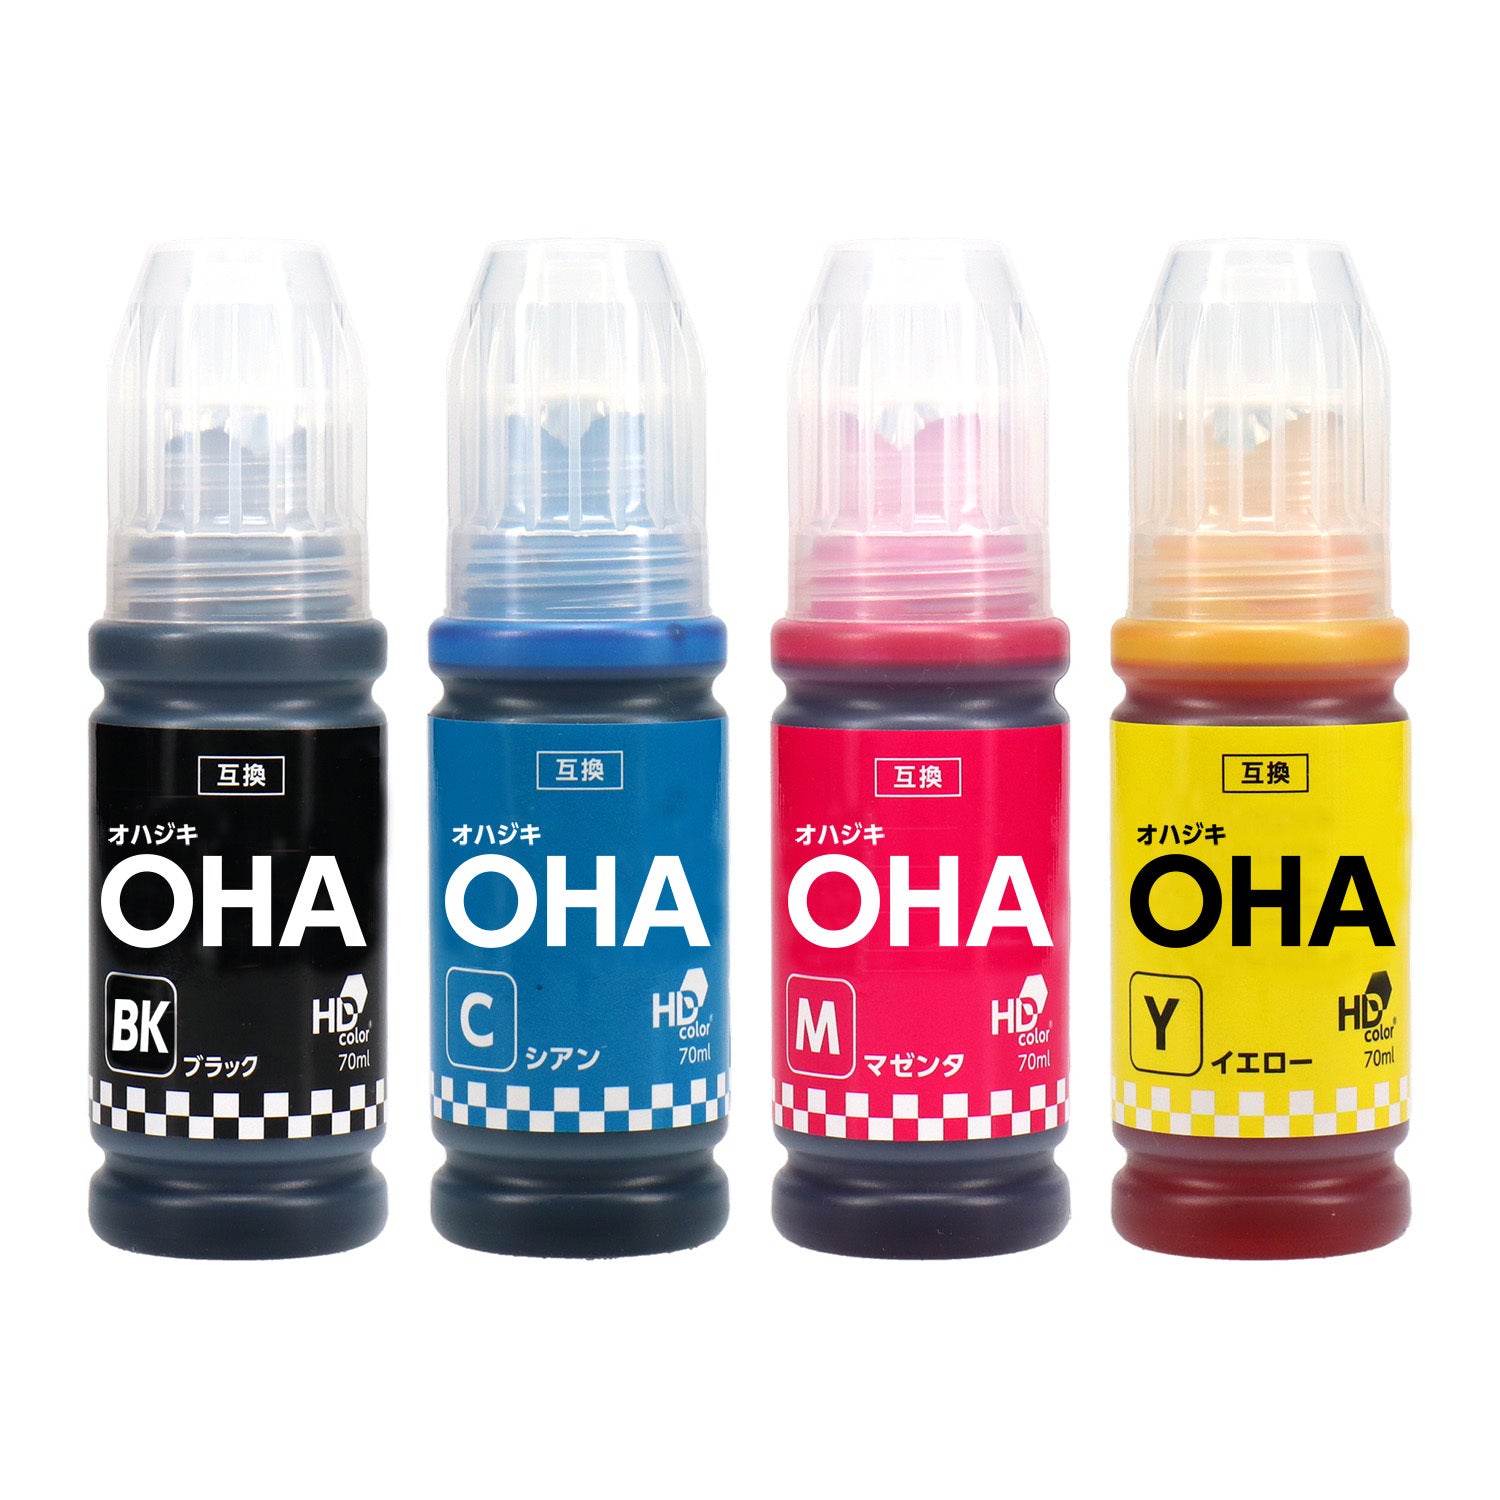 エプソン用 OHA (オハジキ) 互換インクボトル 4色セット